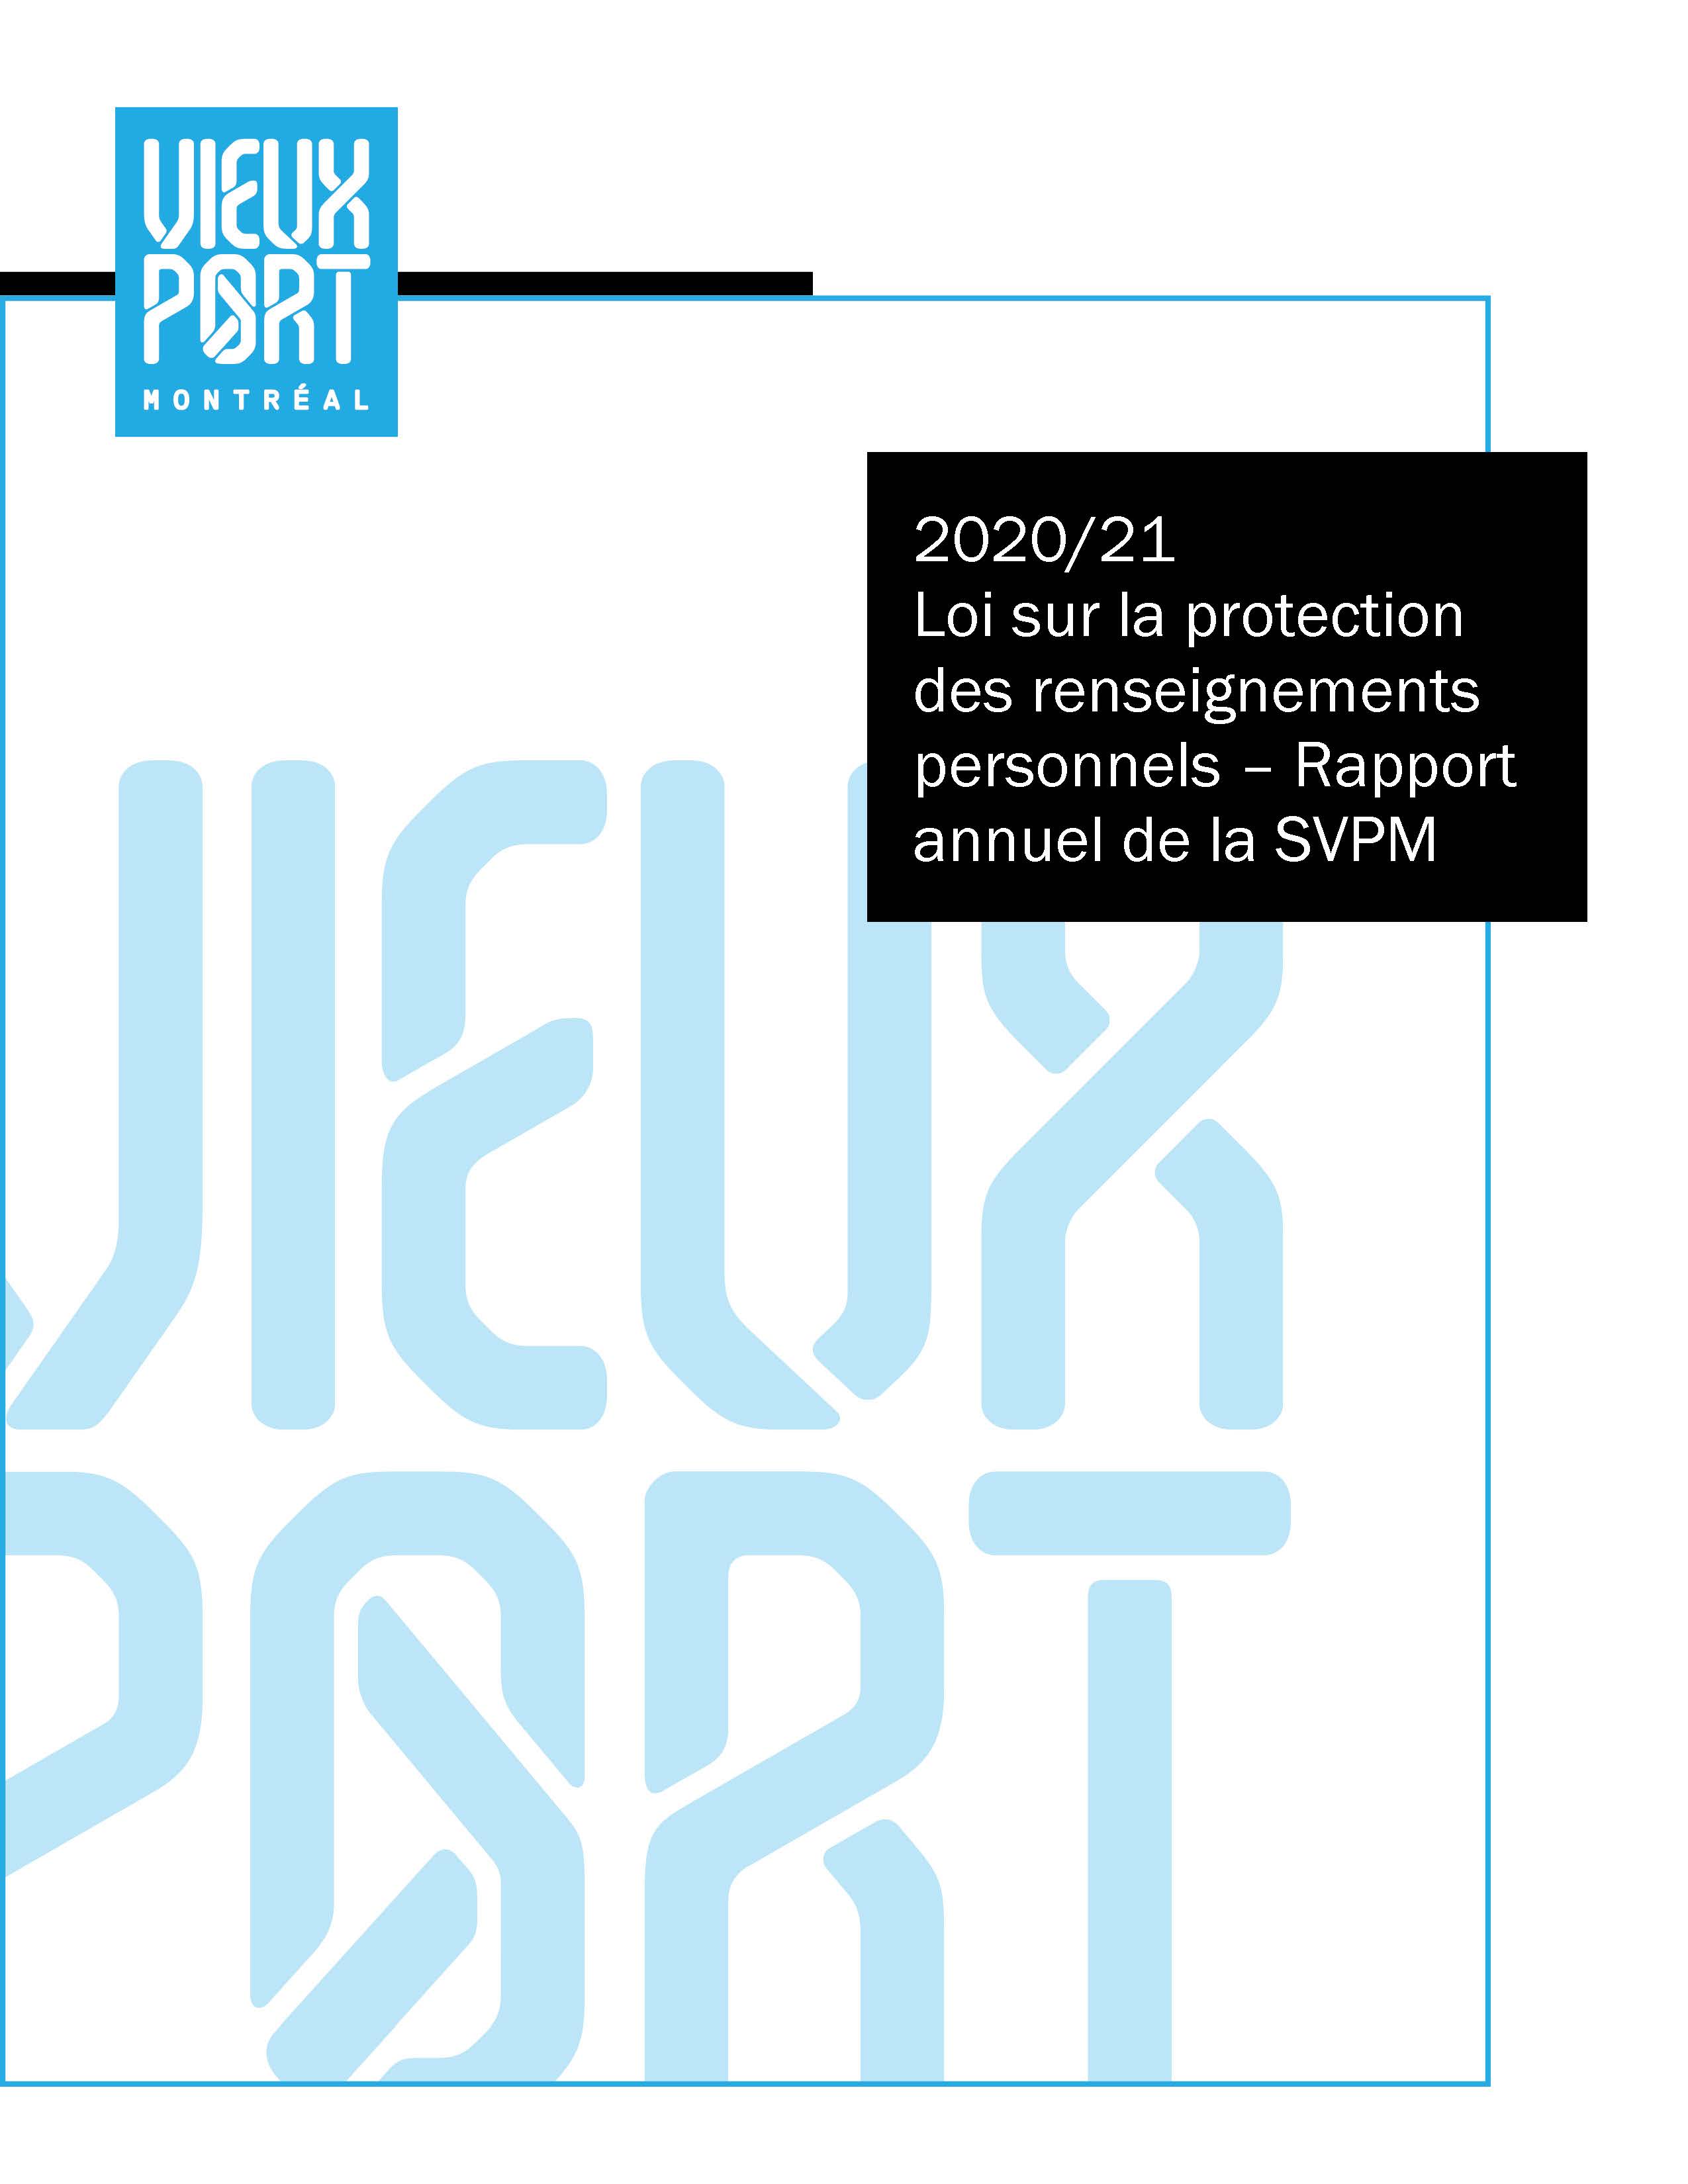 2020-21 Loi sur la protection des renseignements personnels - Rapport annuel de la SVPM